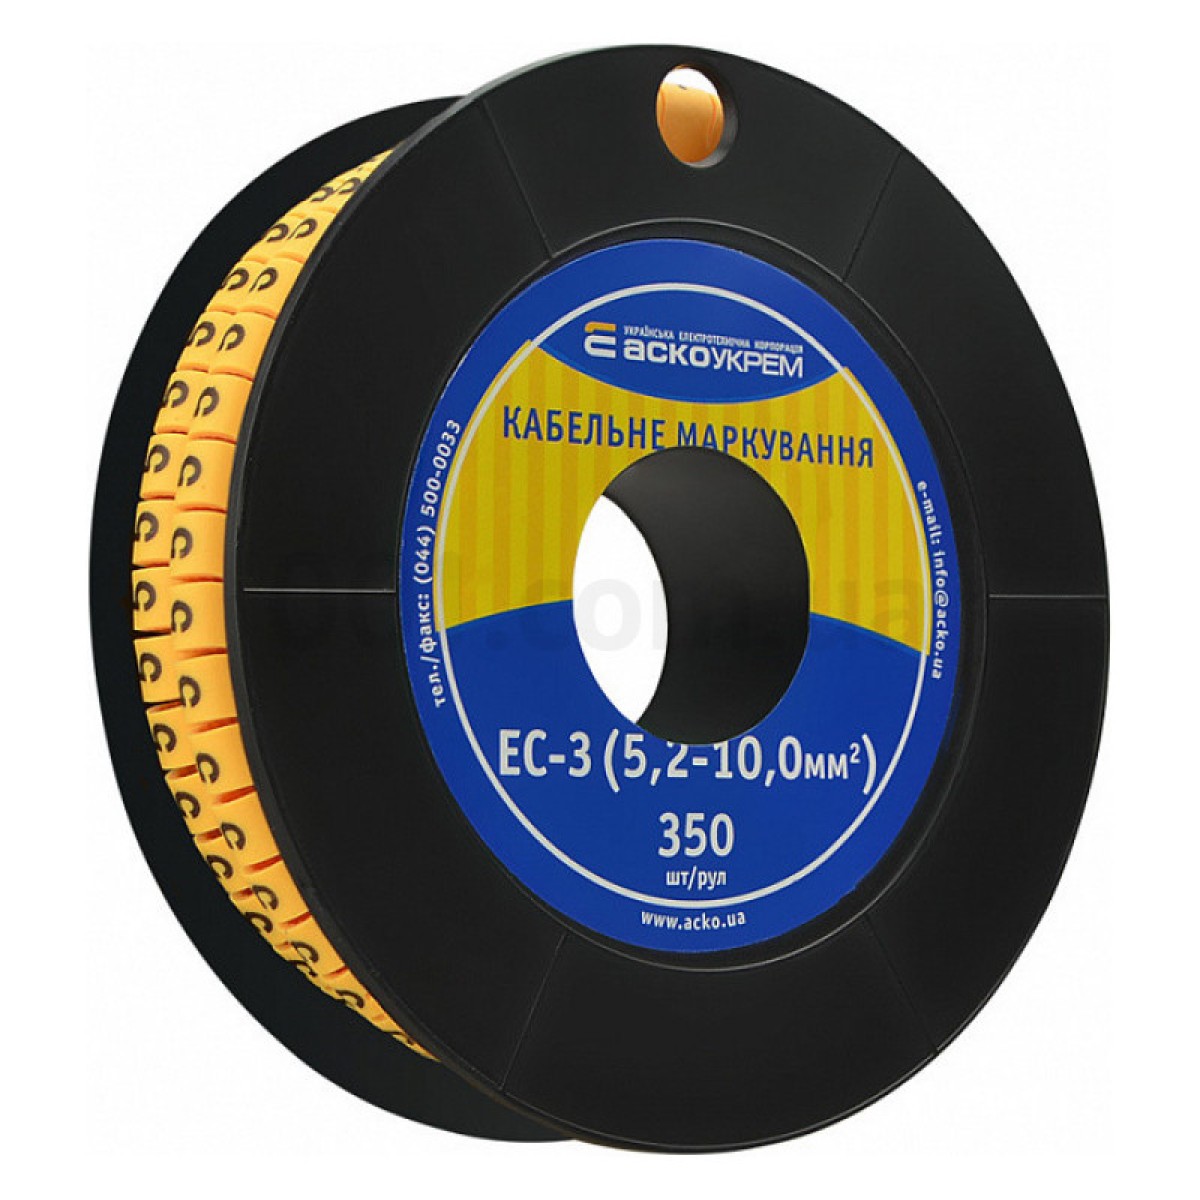 Маркування ЕС-3 для кабелю 5,2-10,0 мм² символ «5» (рулон 250 шт.), АСКО-УКРЕМ 256_256.jpg